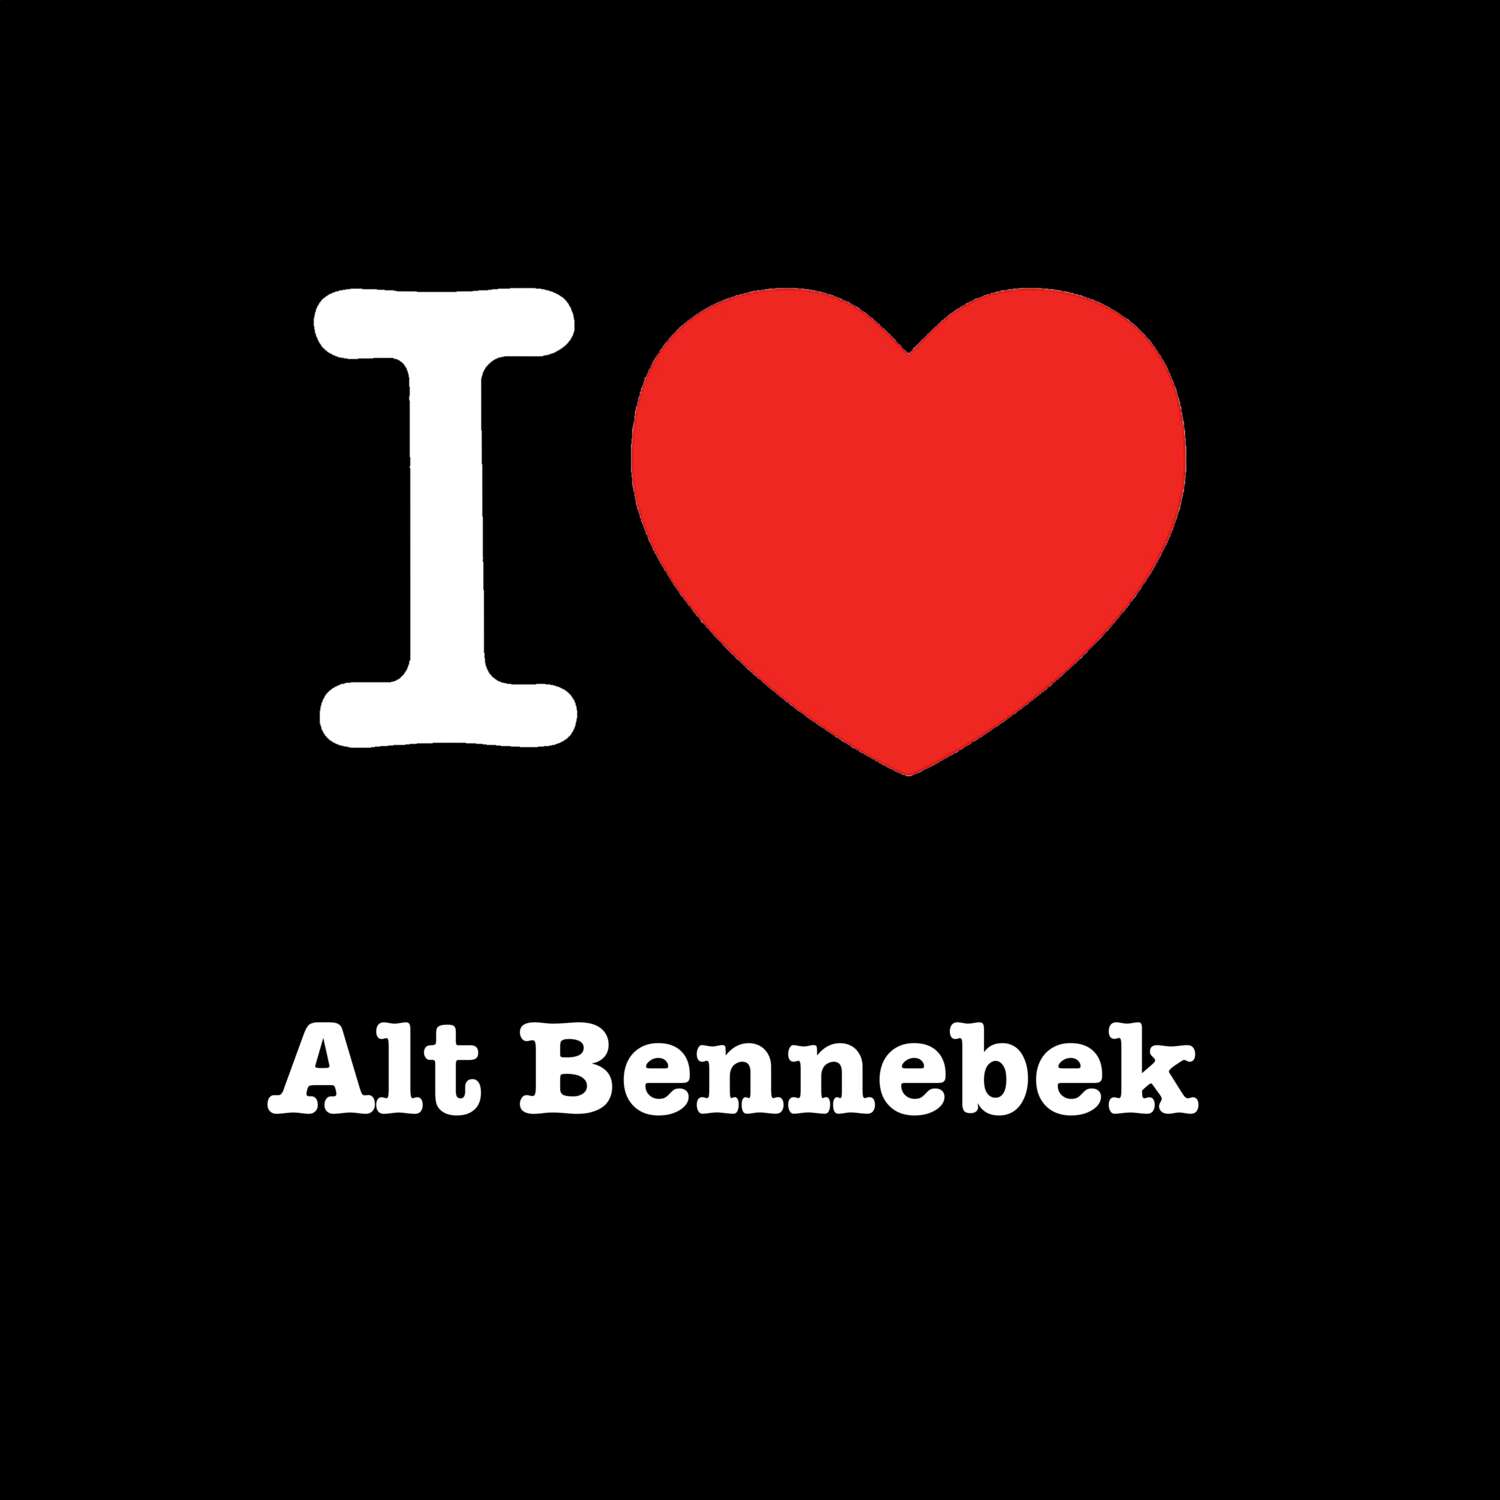 Alt Bennebek T-Shirt »I love«